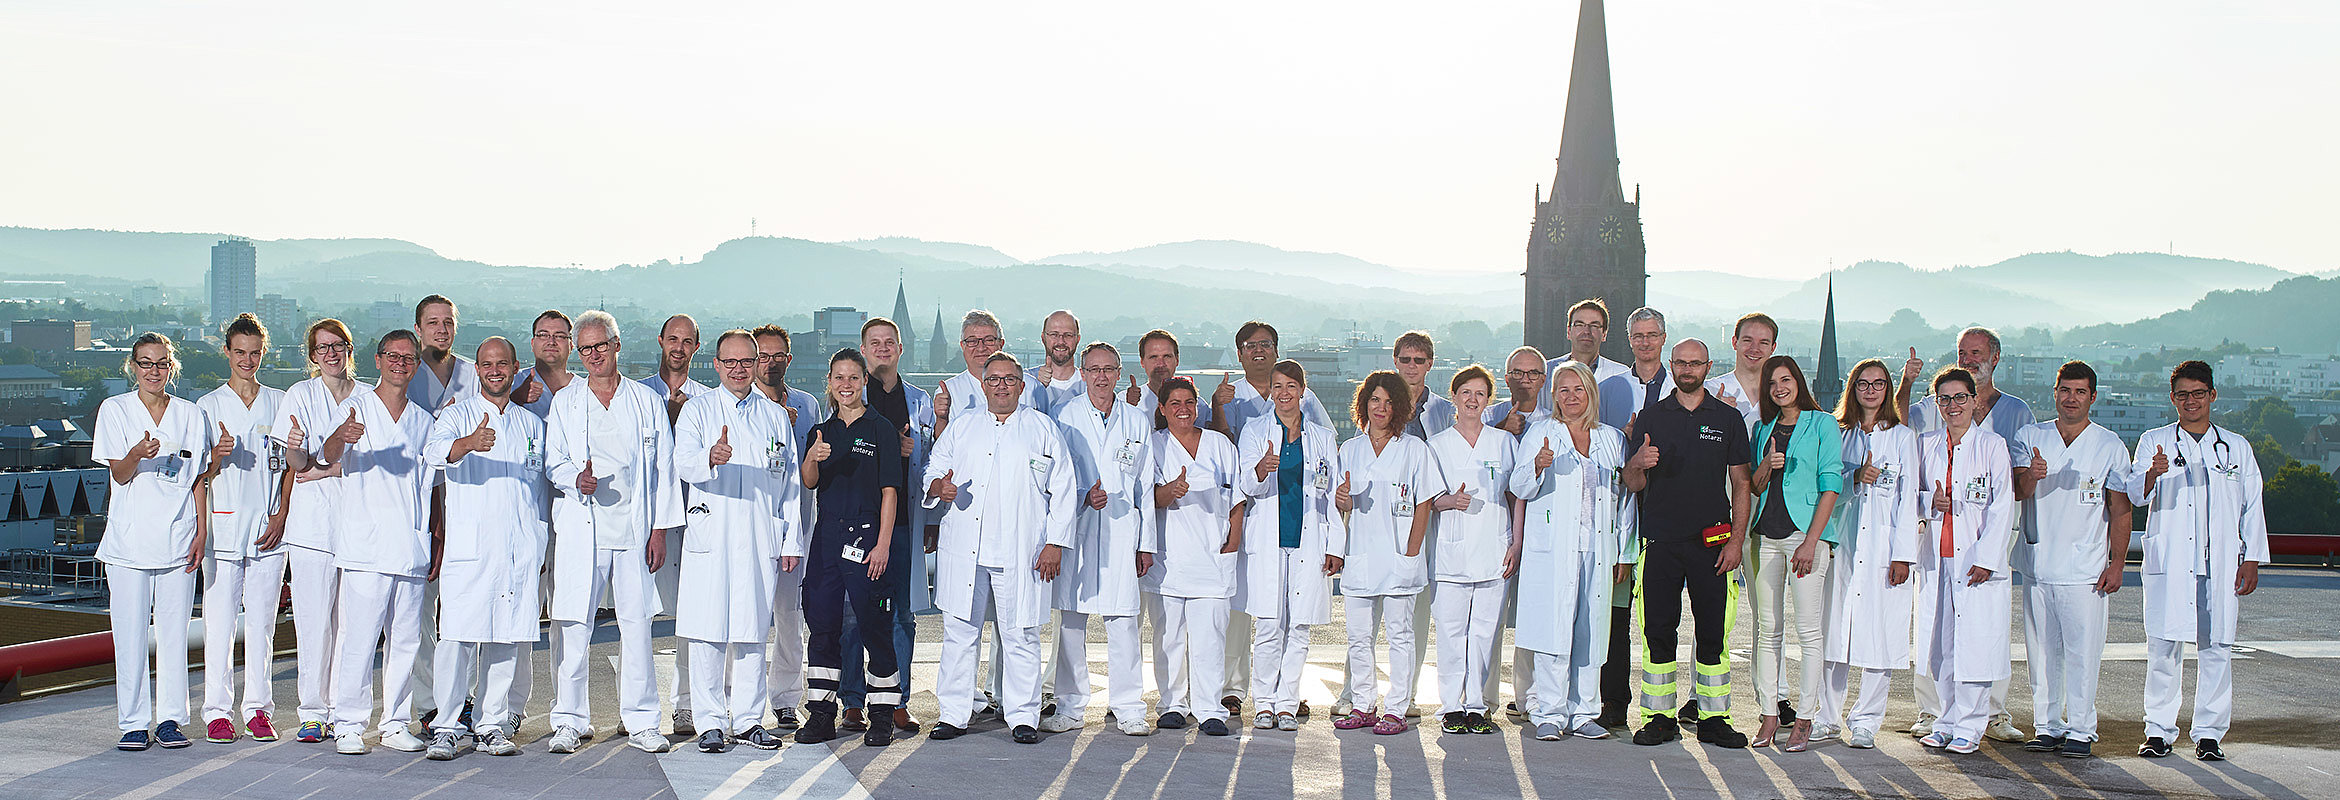 Das Team der Klinik für Anästhesie, Intensiv-, Notfallmedizin und Schmerztherapie Kaiserslautern auf dem Hubschrauberlandeplatz